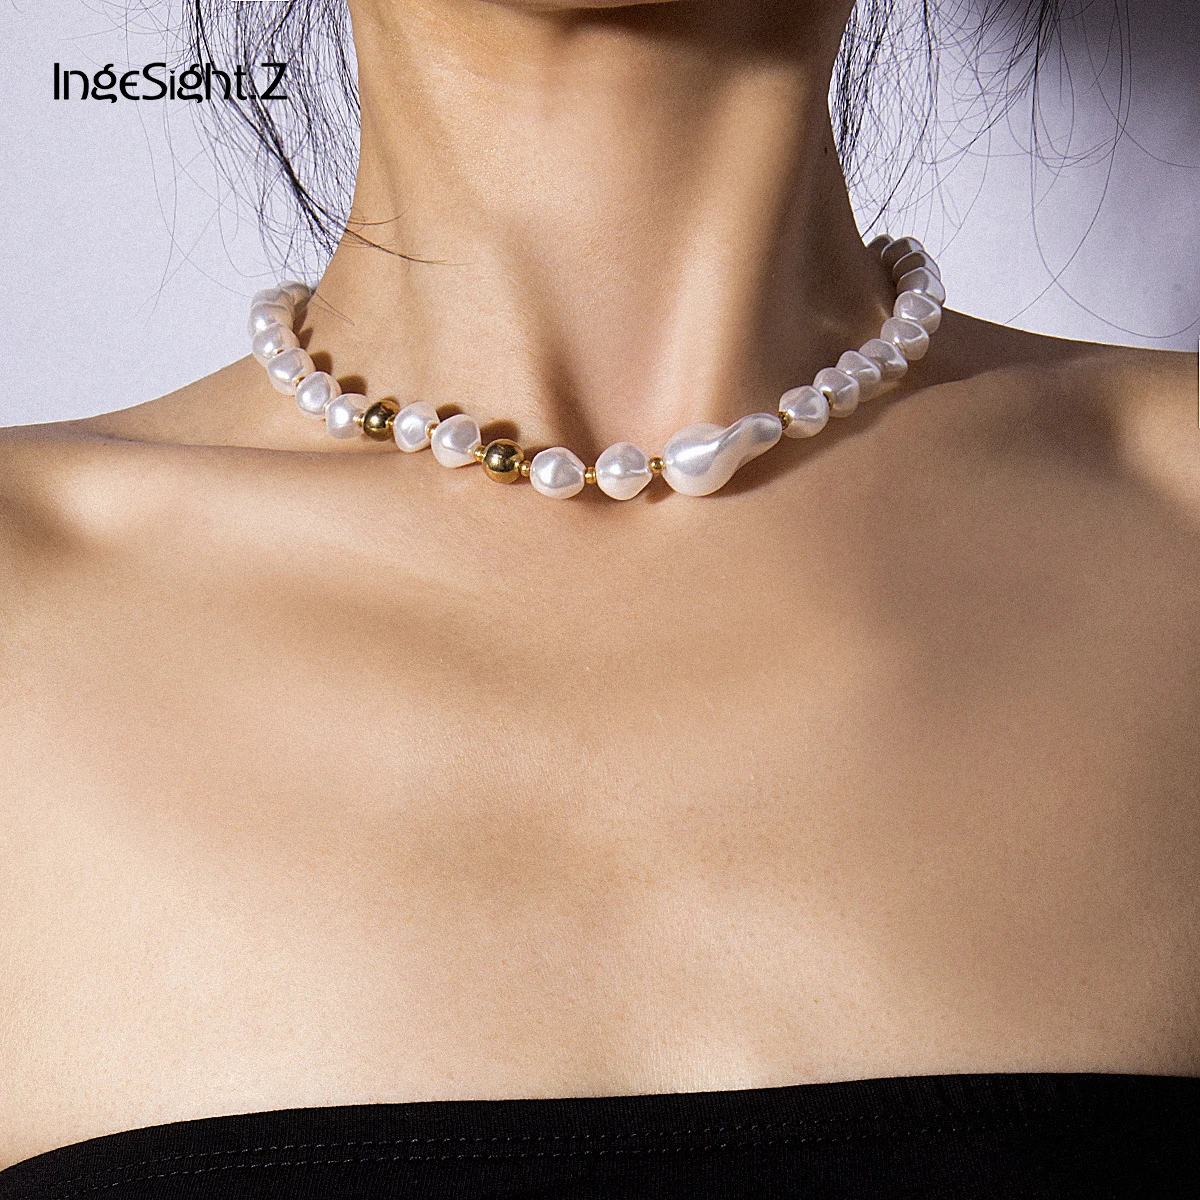 IngeSight. Z панк имитация жемчуга чокер ожерелье воротник массивные маленькие бусы короткая цепочка на ключицы ожерелье для женщин ювелирные изделия